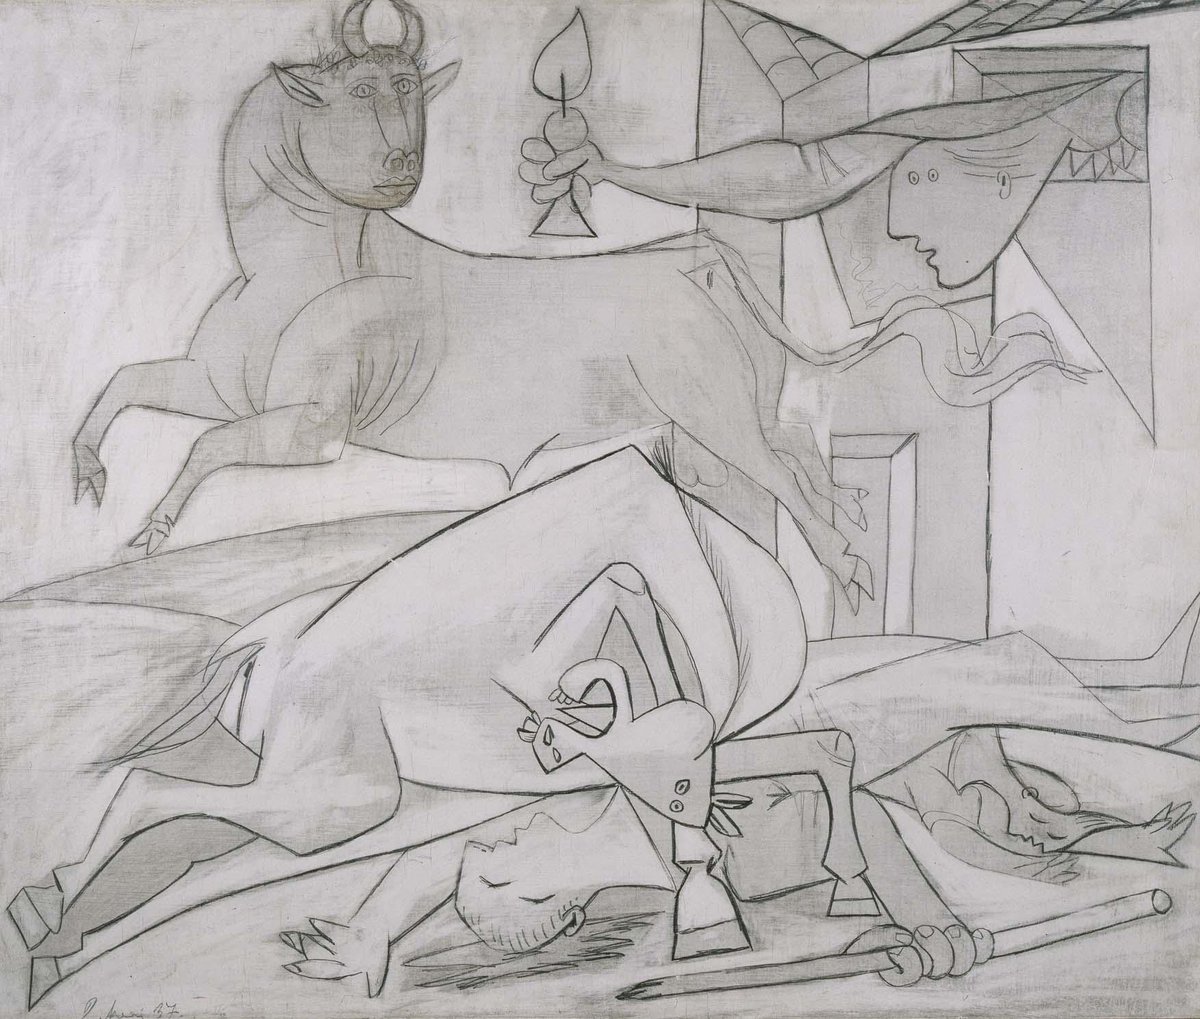 En 2017, con motivo del 80 aniversario de la creación de Guernica (1937), organizamos la muestra "Piedad y terror en Picasso. El camino a Guernica" que narraba los pasos de Picasso hasta crear esta obra. En su catálogo se concentra toda esta información:  http://ow.ly/ndIR50zoA06 